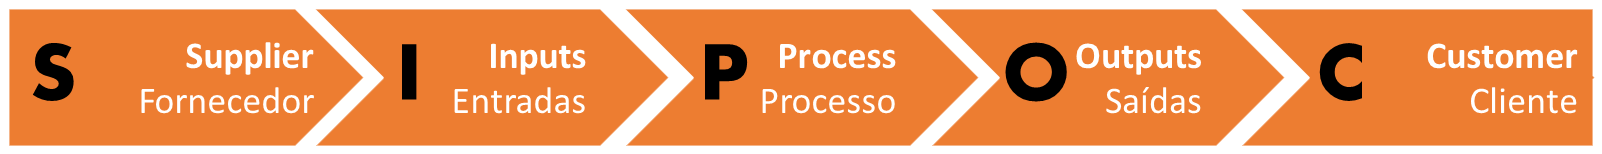 SIPOC: Supplier (Fornecedor), Inputs (Entradas), Process (Processo), Outputs (Saídas), Customer (Cliente)